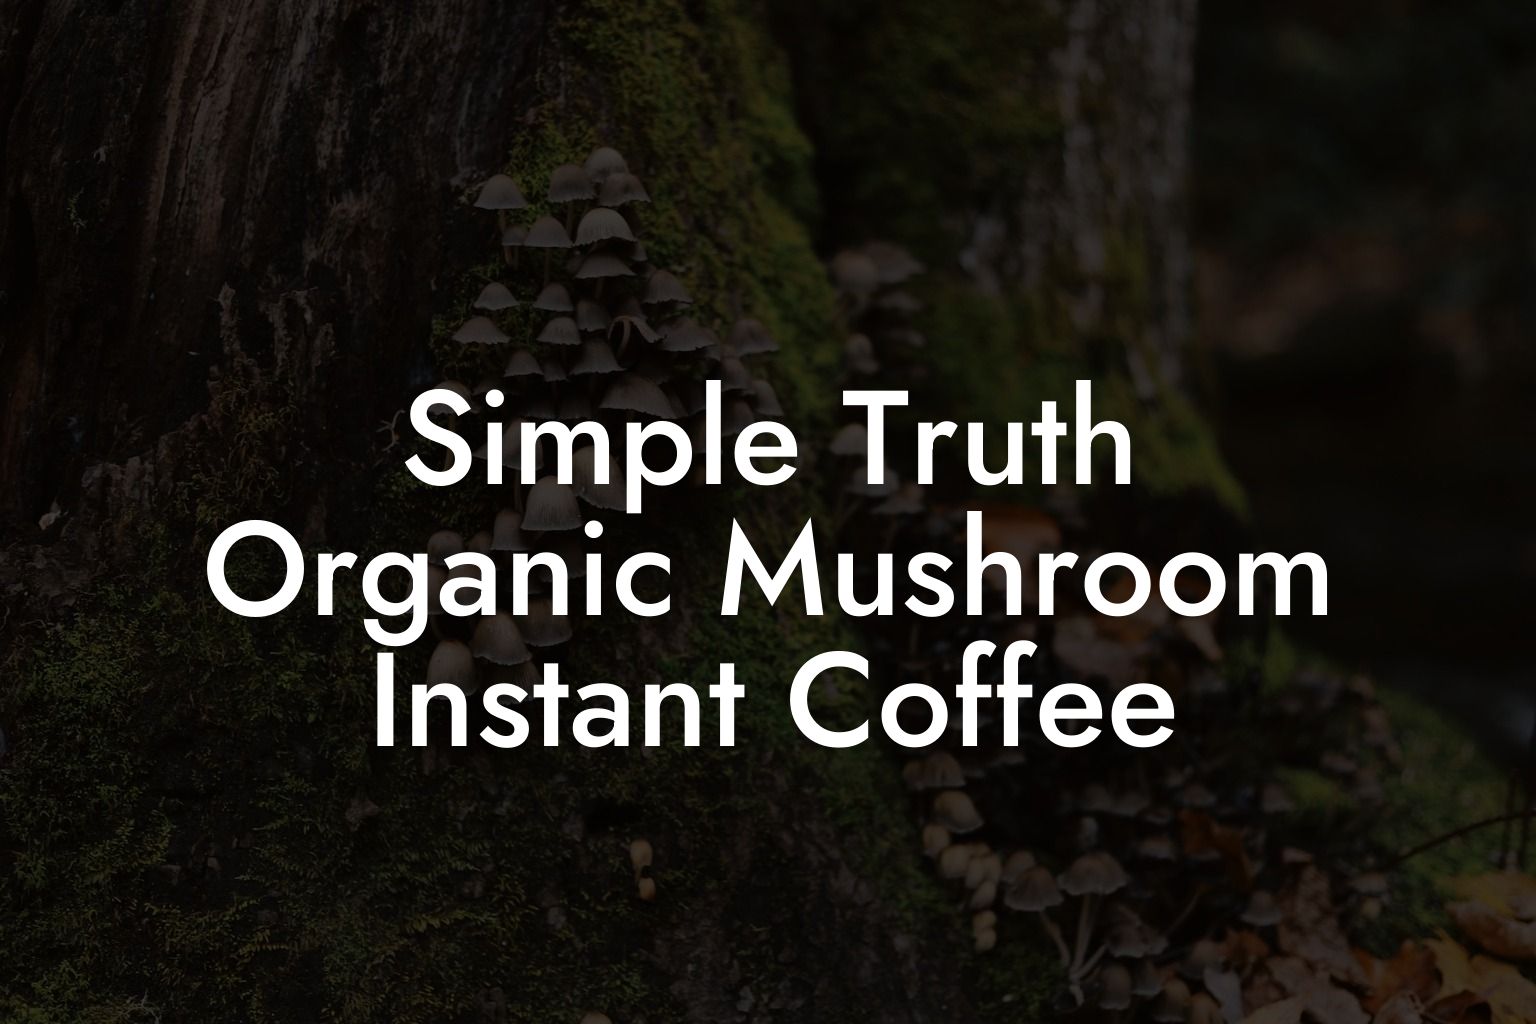 Simple Truth Organic Mushroom Instant Coffee